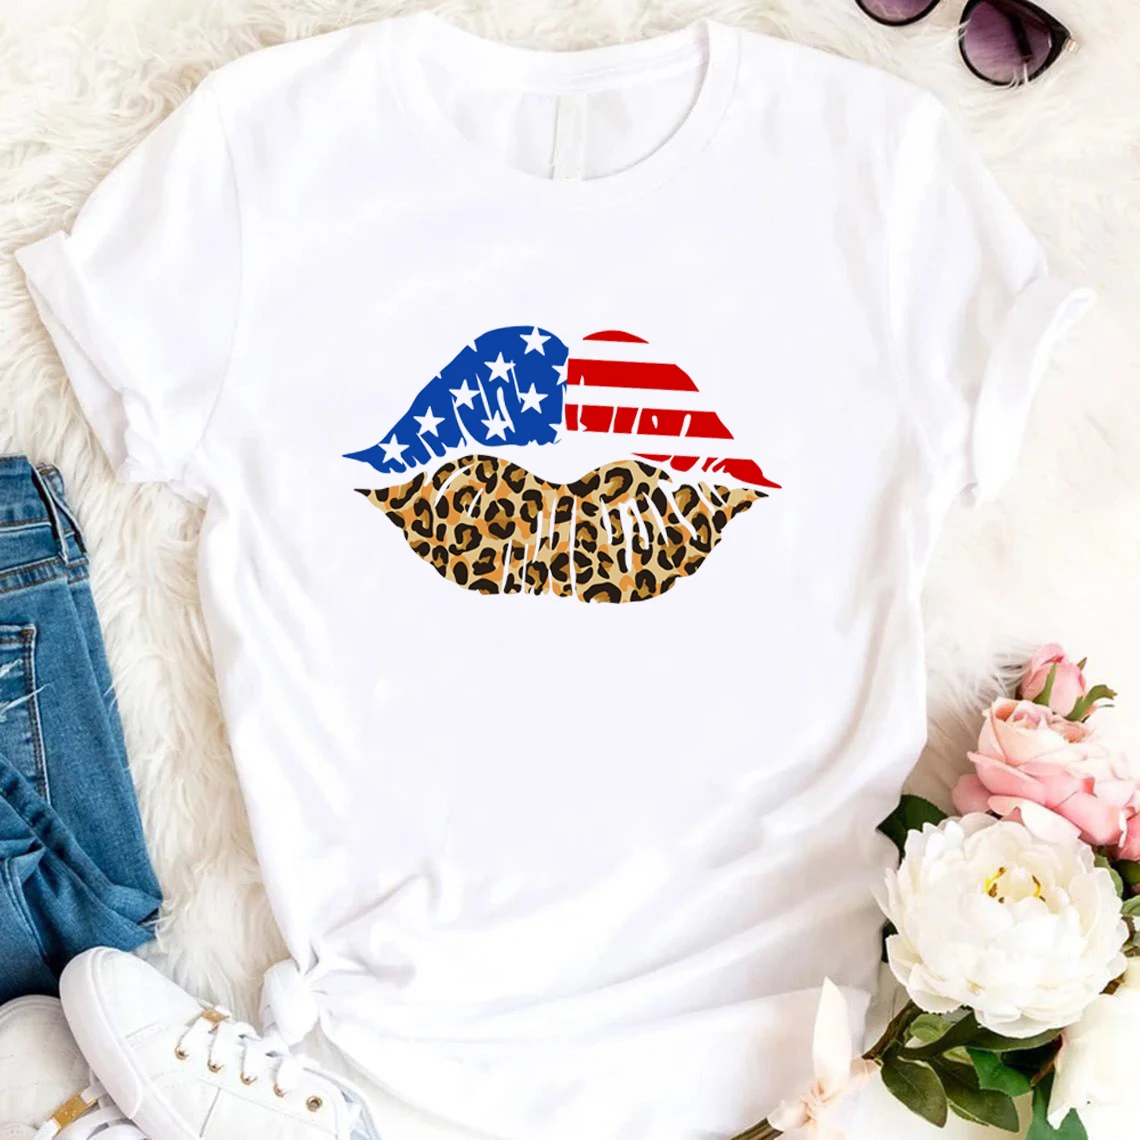 

Патриотическая женская футболка с американским флагом и губами, рубашки для поцелуев, футболка 4 июля, футболка унисекс, топ на День Независимости